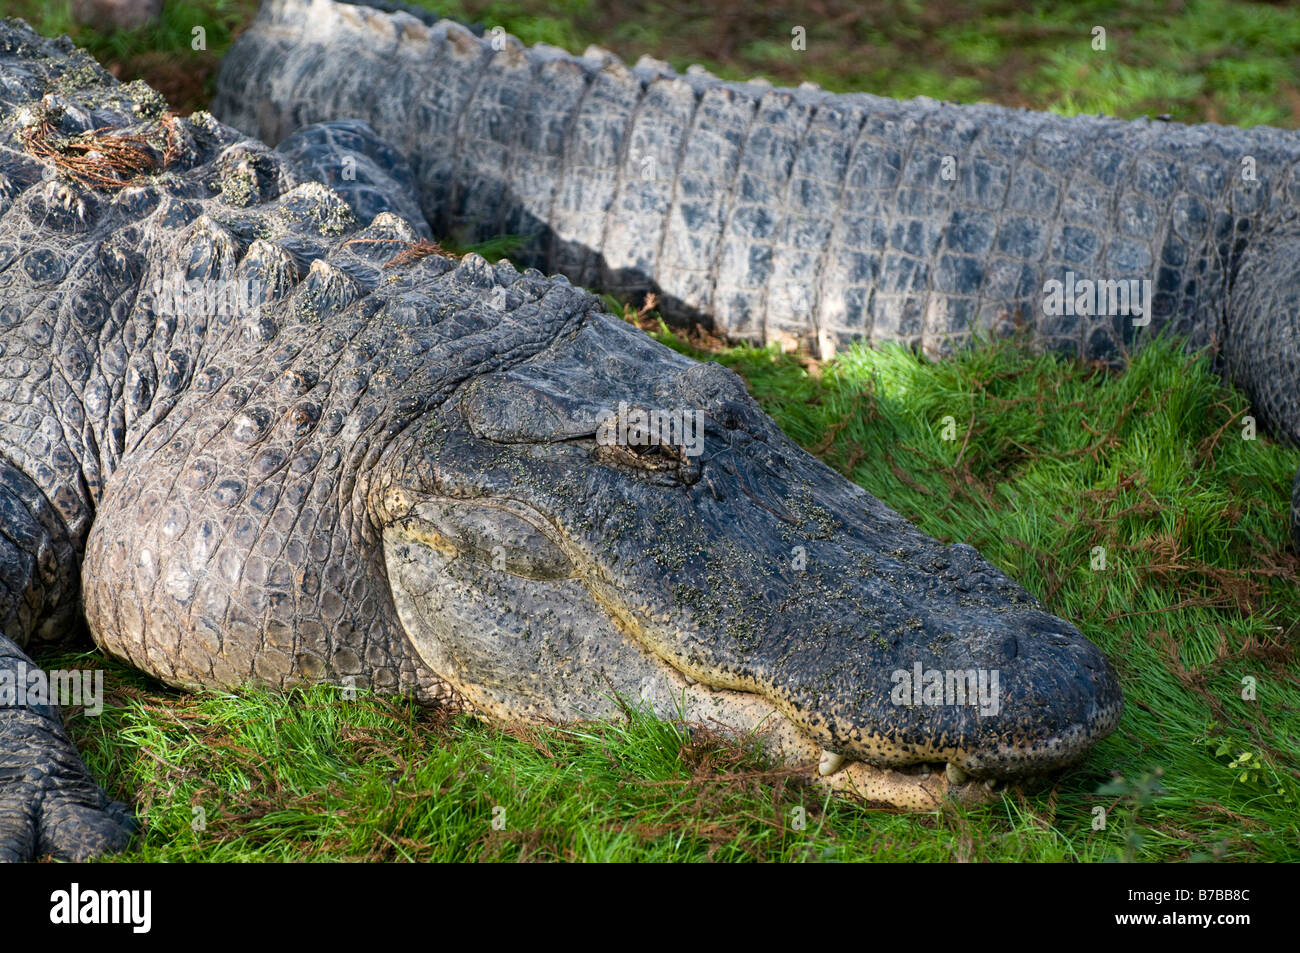 Alligator Pair Stock Photo